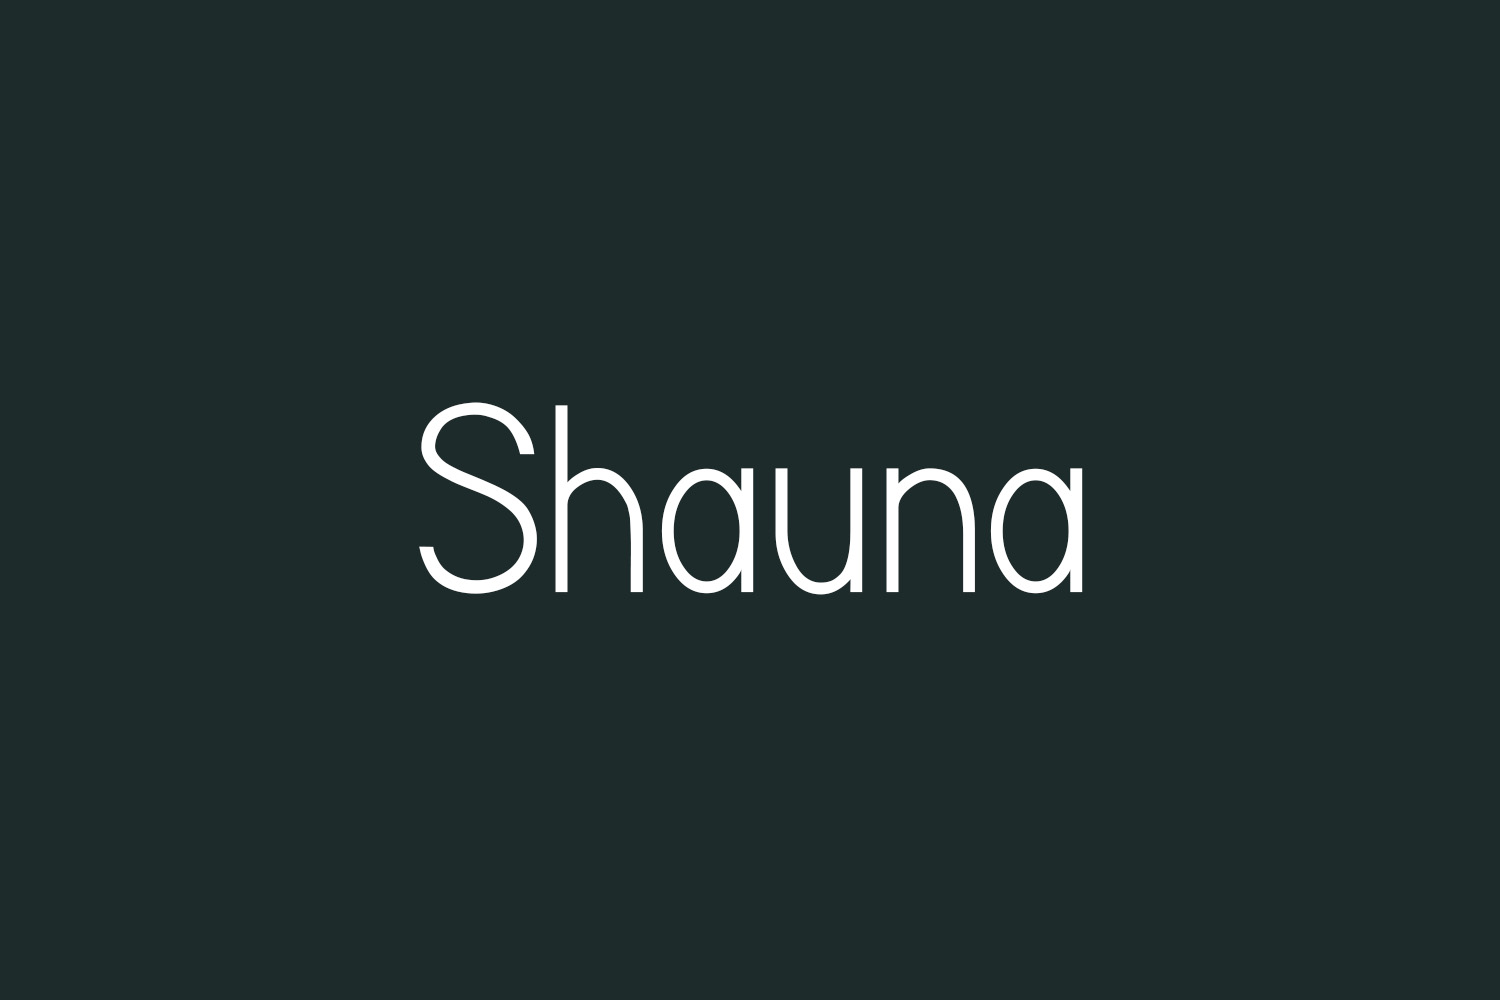 Shauna Free Font